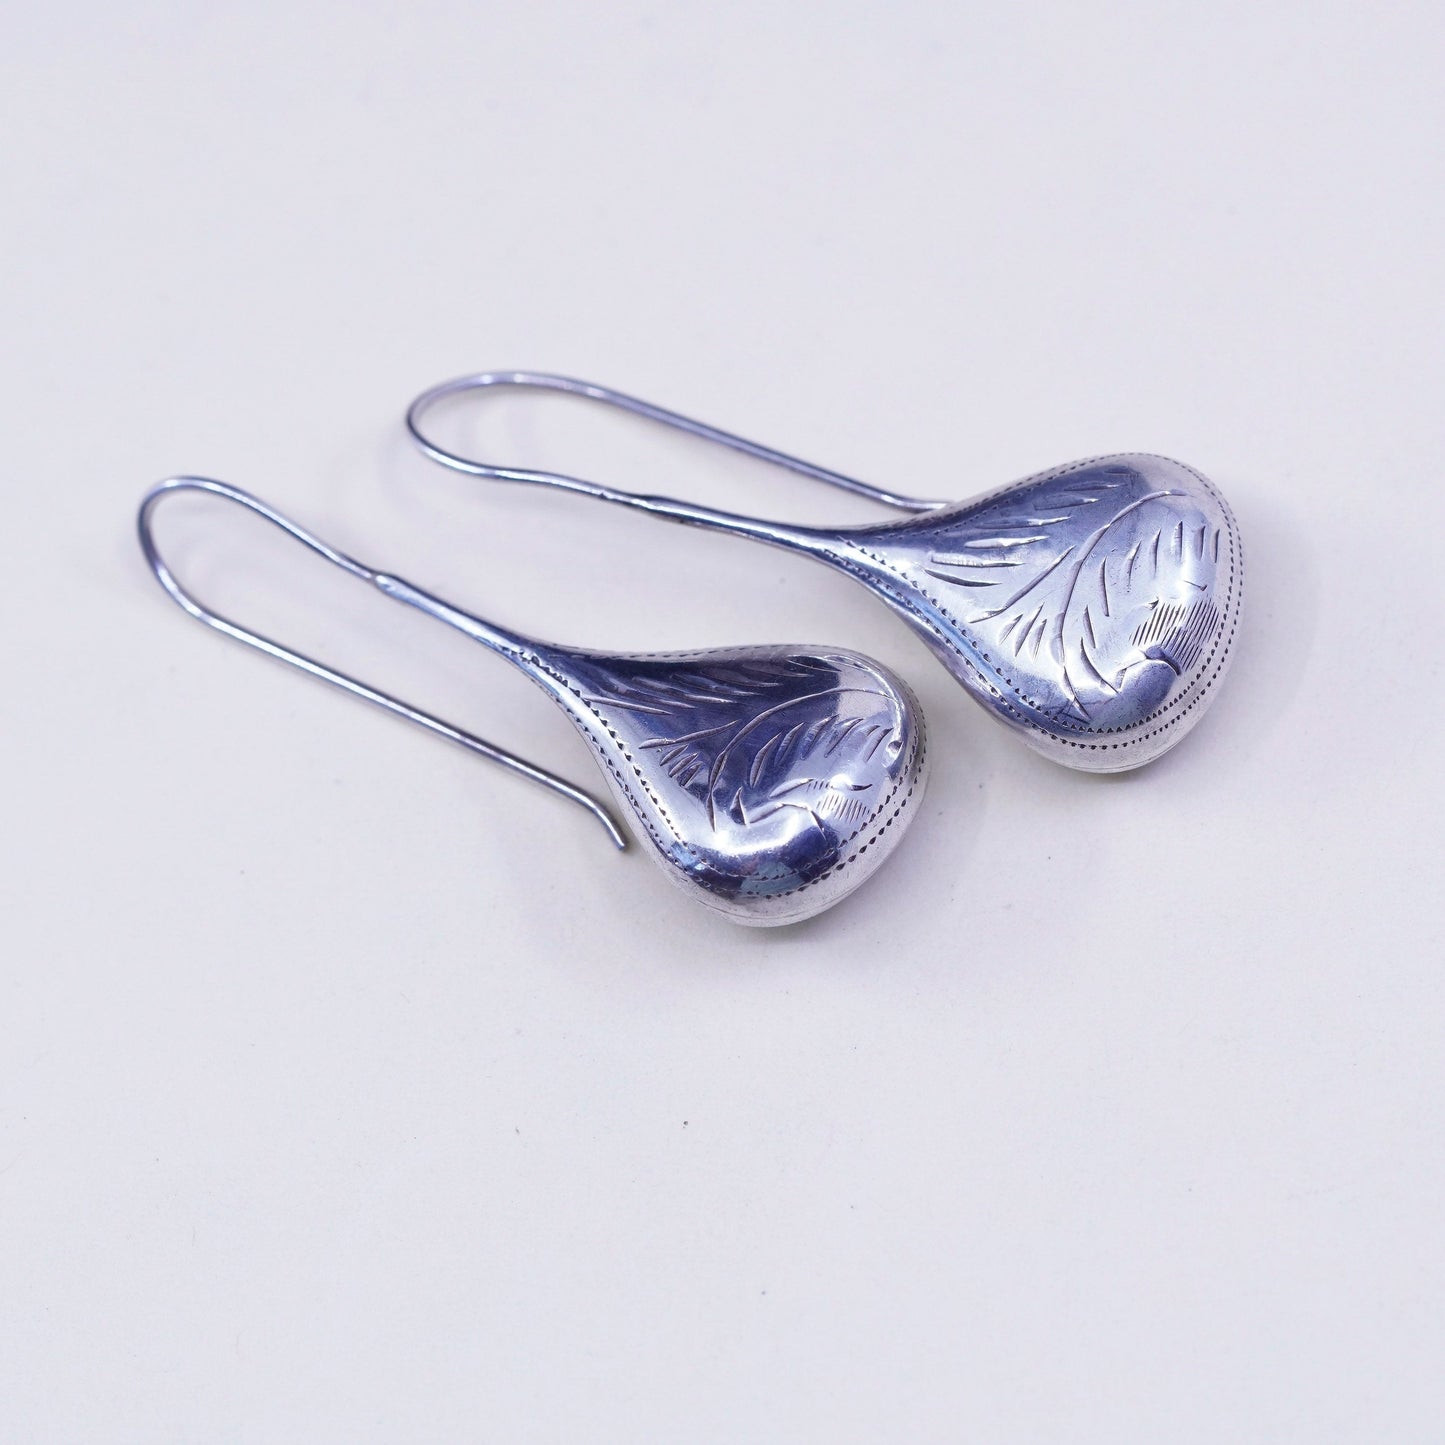 Vintage Sterling silver handmade earrings, textured puffy 925 teardrop dangles